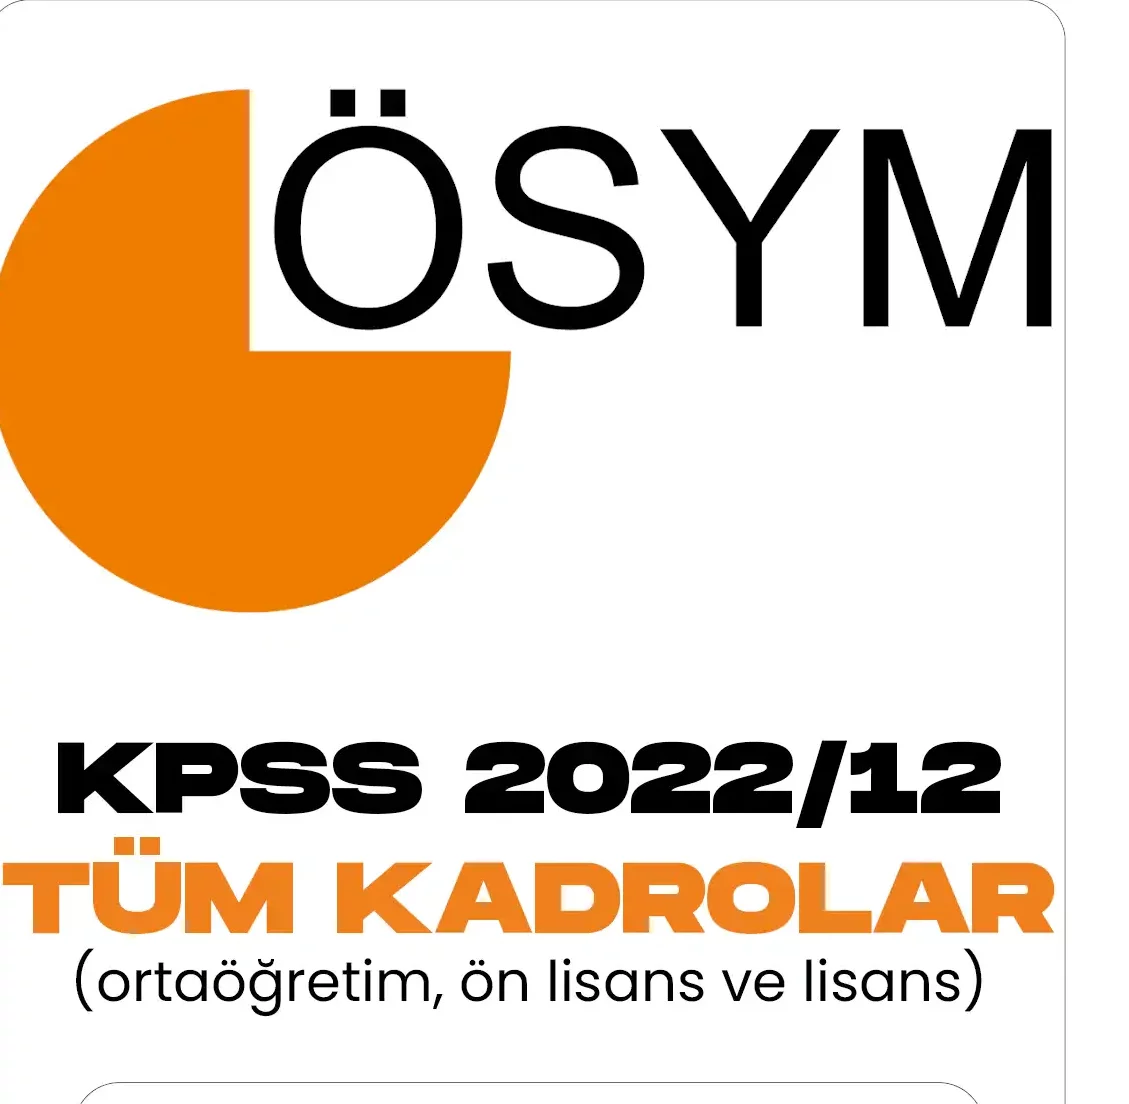 KPSS 2022/2 tercih işlemlerinde ortaöğretim, ön lisans ve lisans kadroları.